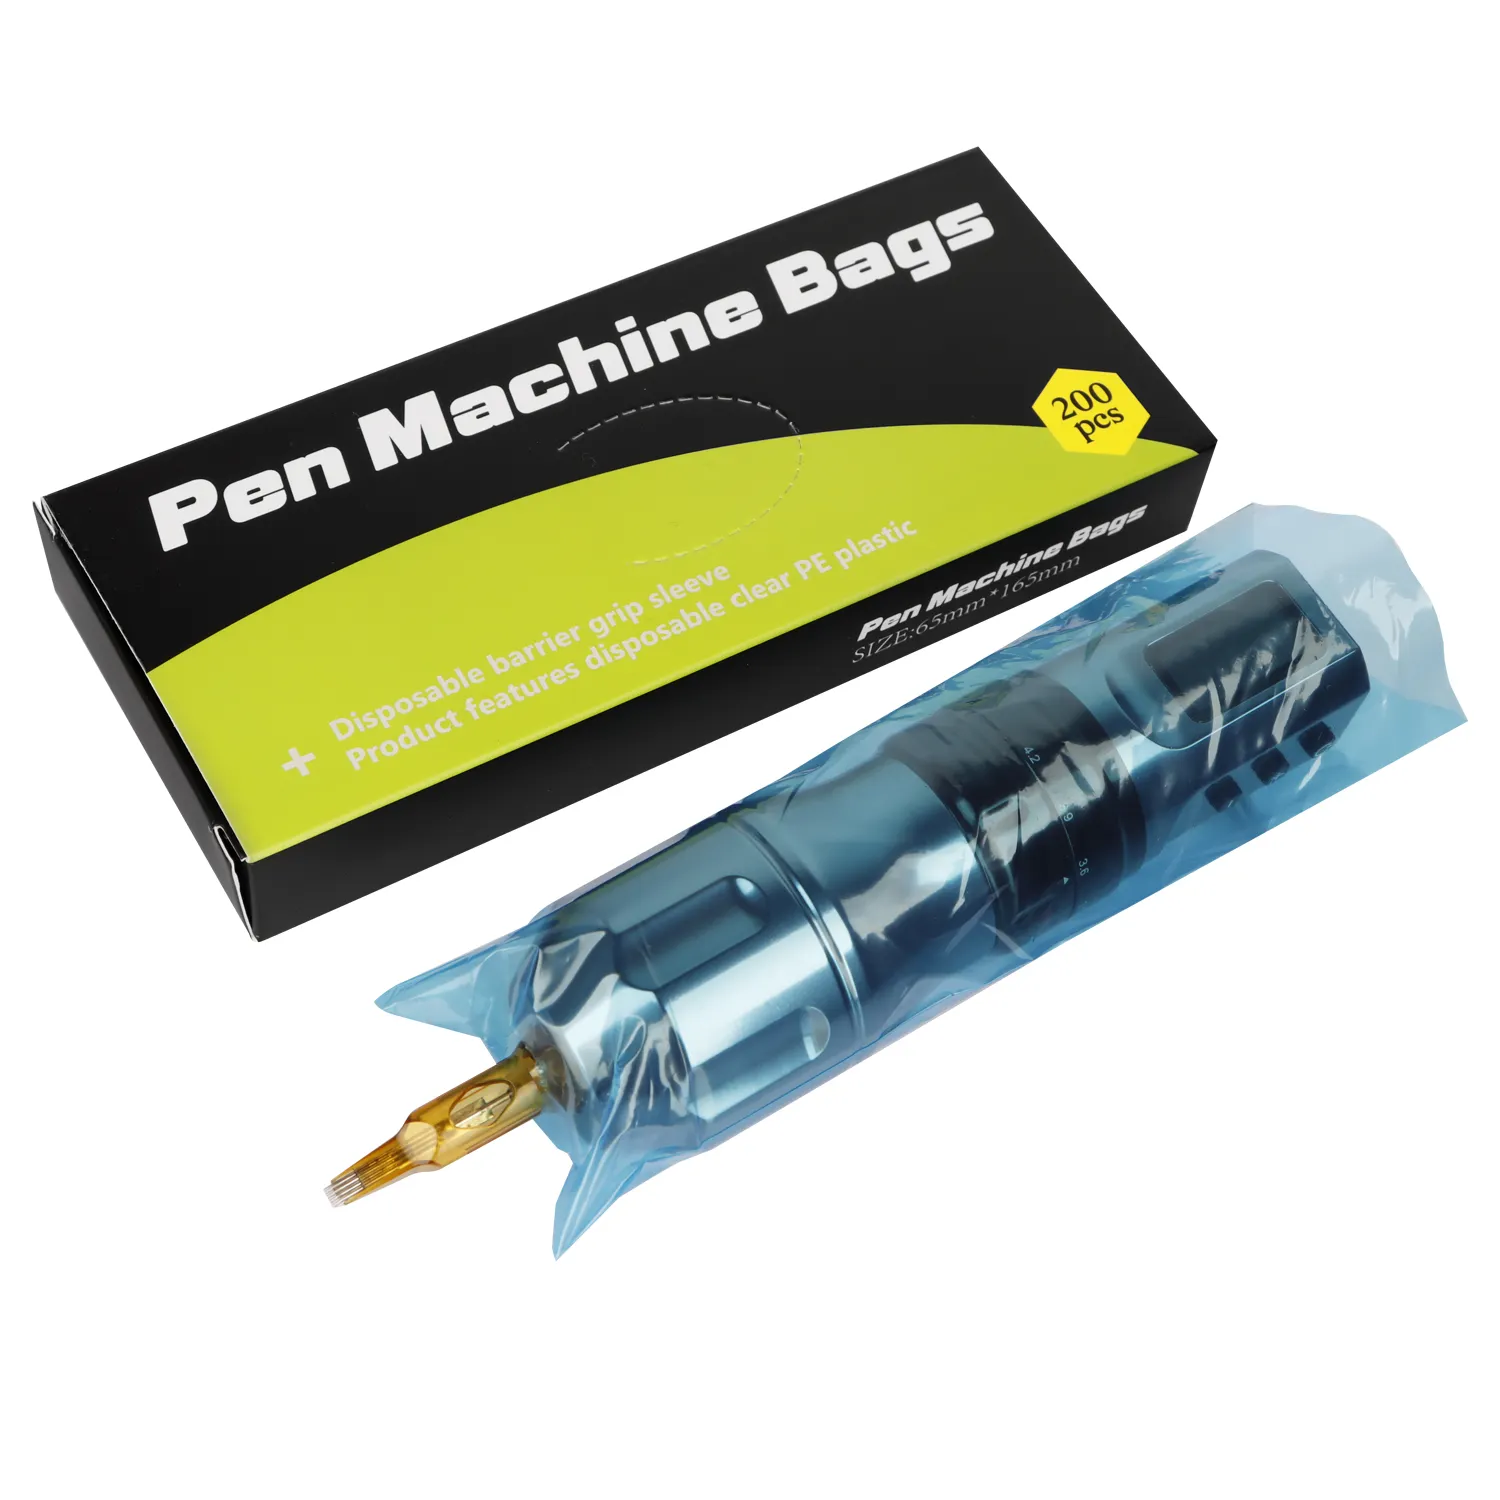 उच्च गुणवत्ता वाले डिस्पोजेबल पेशेवर टैटू क्लिप कॉर्ड टैटू पेन के लिए 200 पीसी टैटू मशीन पेन आस्तीन को कवर करते हैं